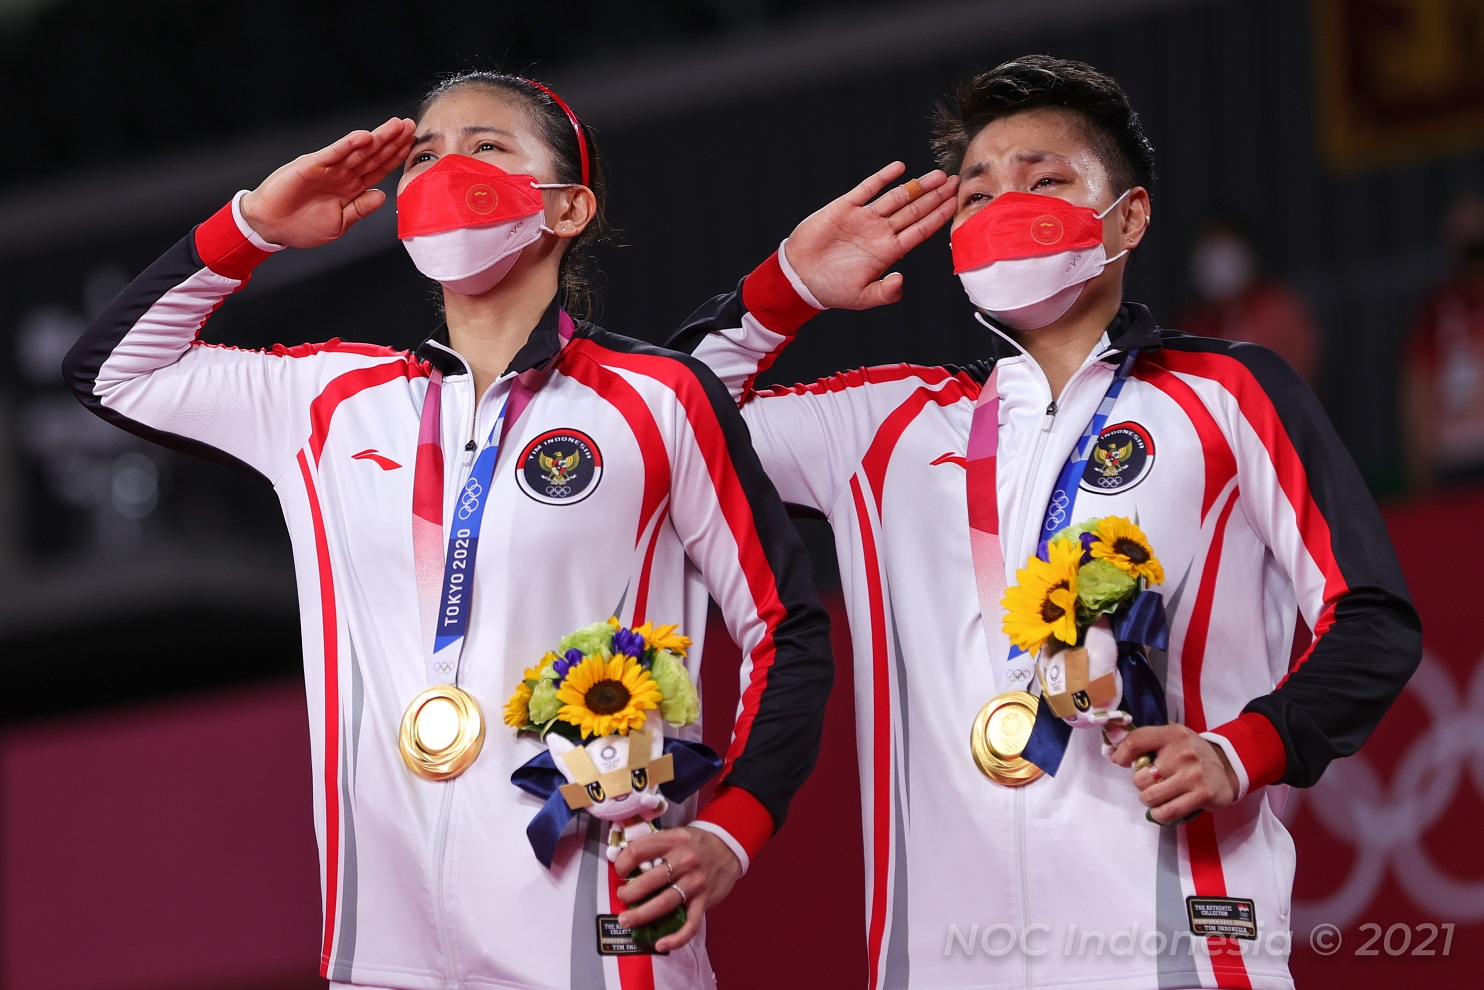 Tinggalkan Olimpiade Tokyo, Indonesia Bawa Pulang 5 Medali